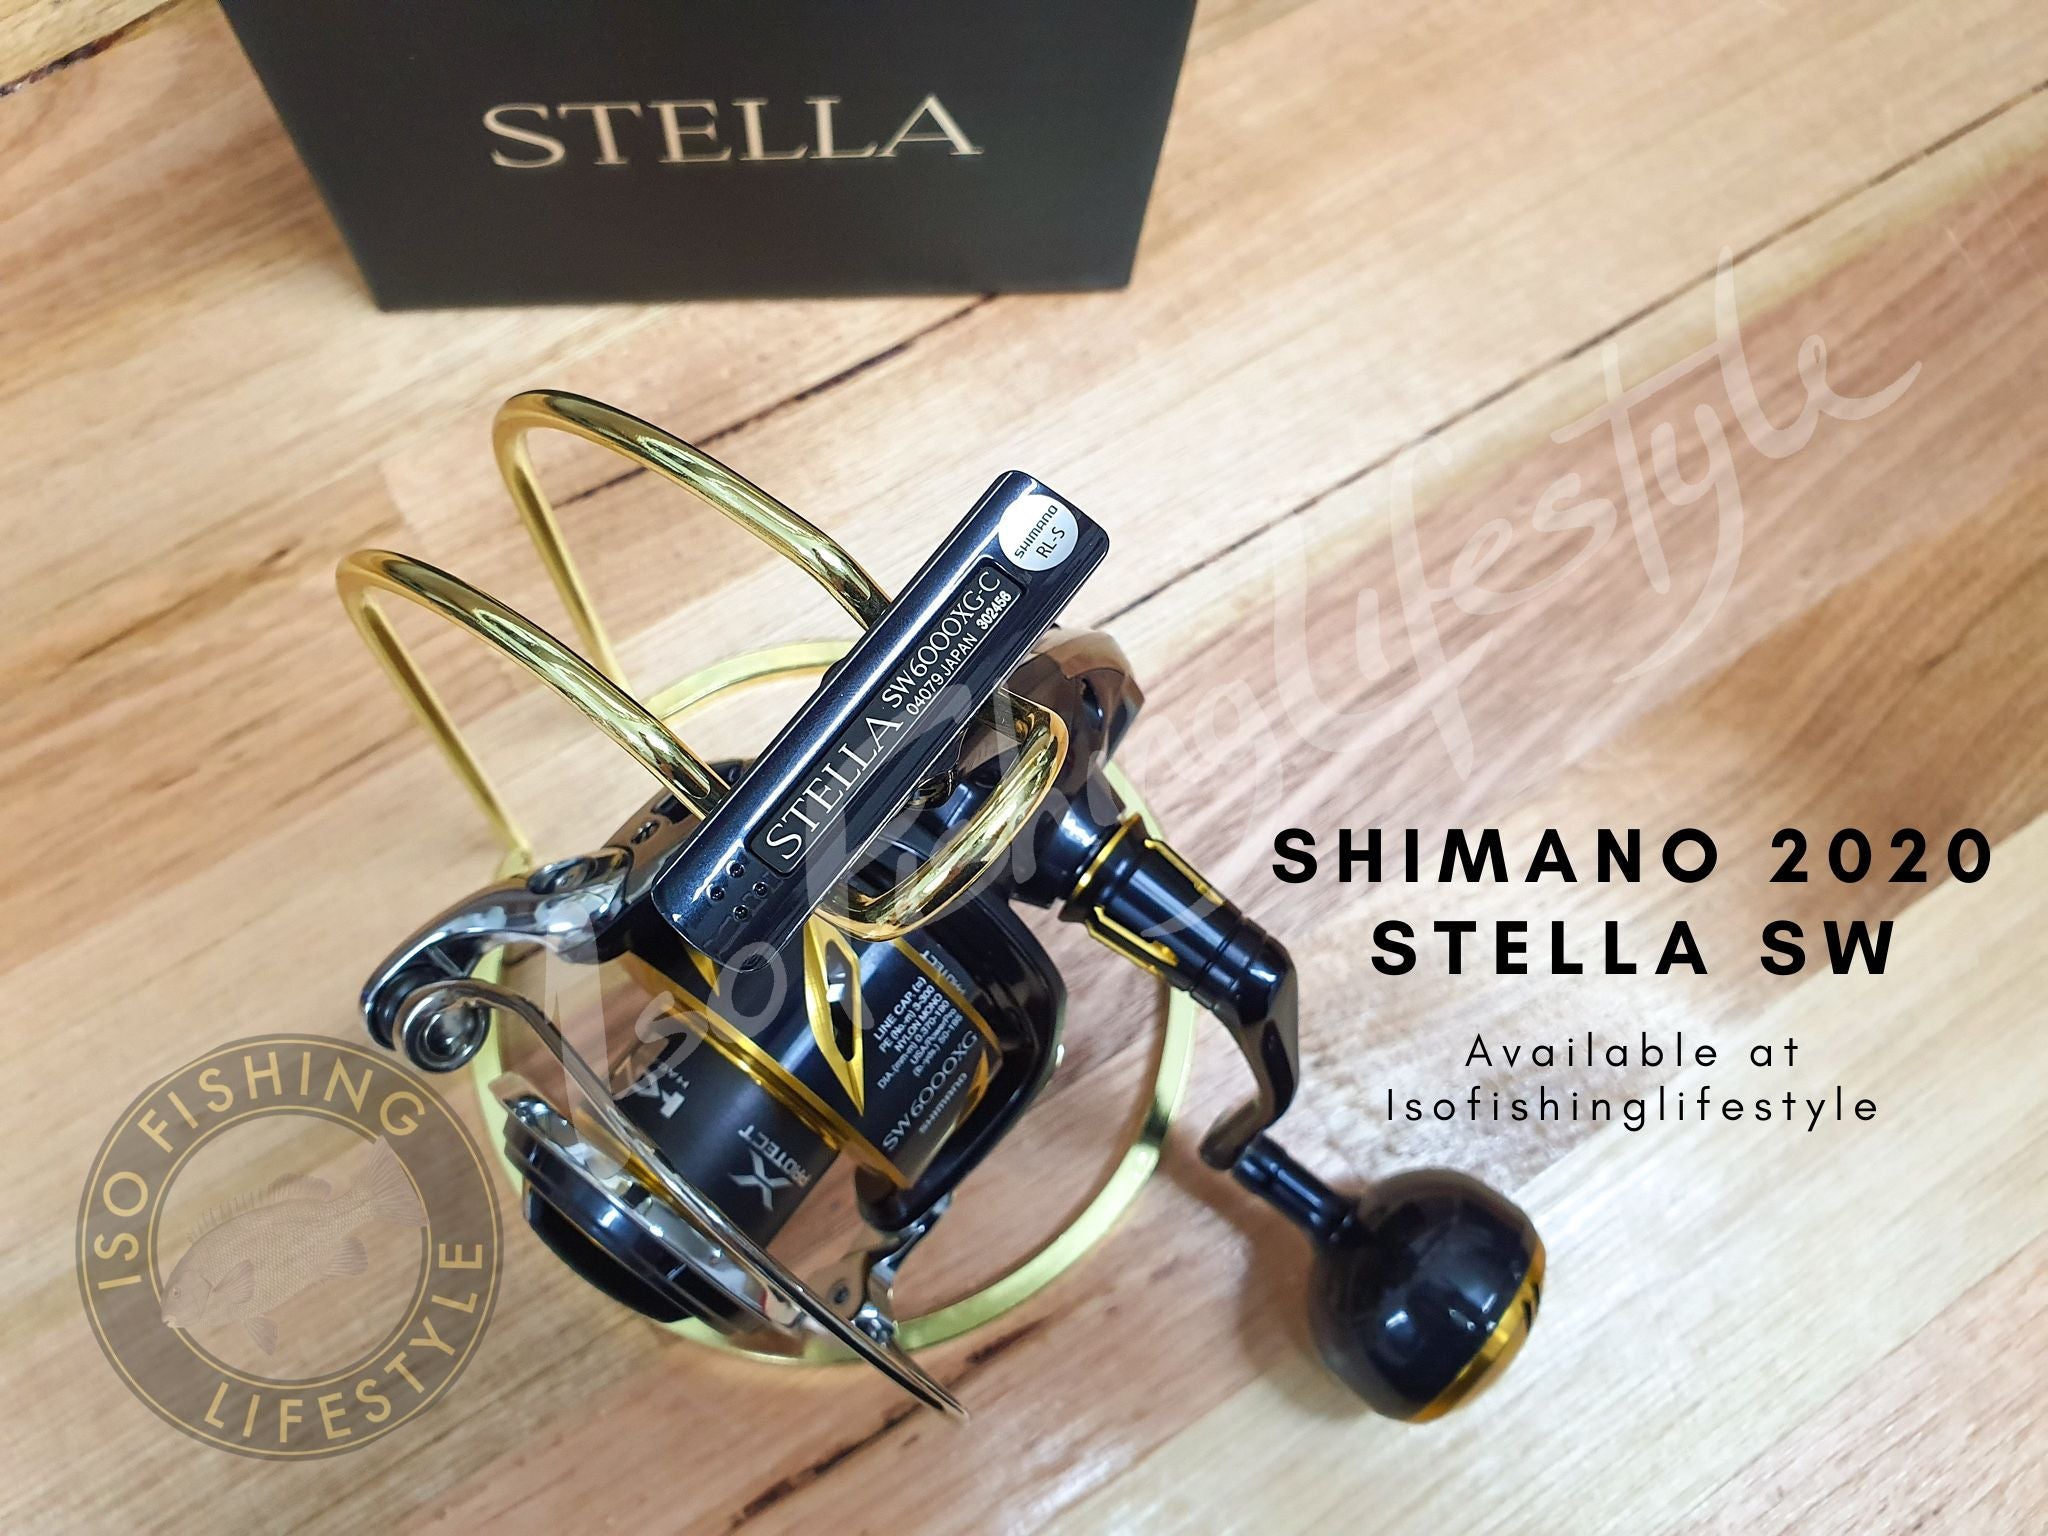 Shimano 19/20 Stella SW – Isofishinglifestyle